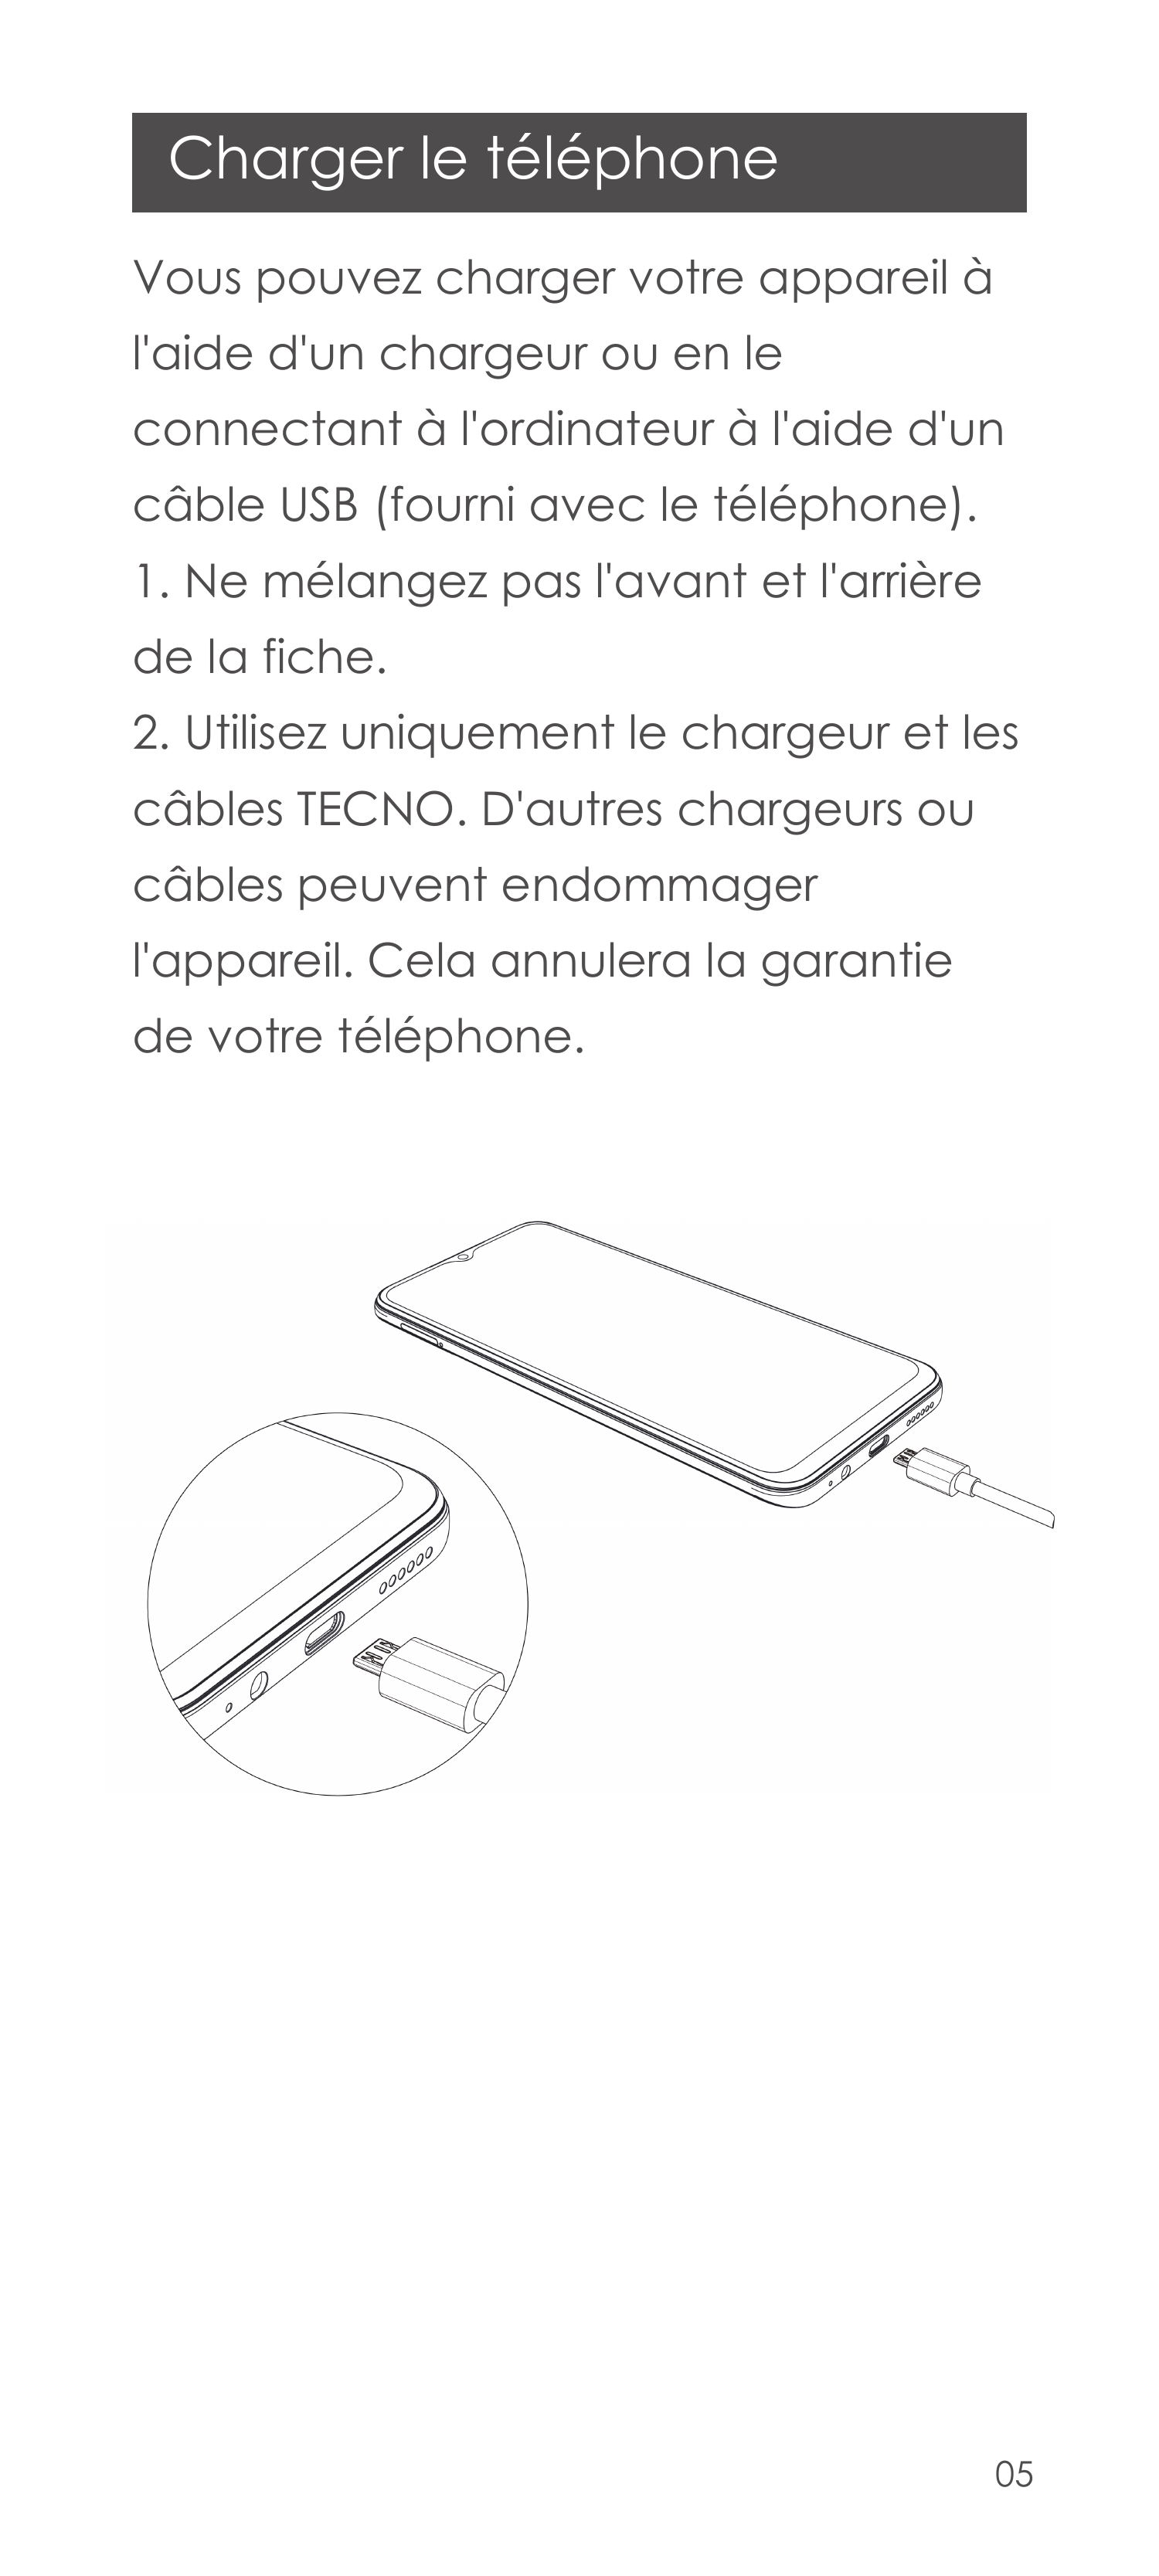 Charger le téléphoneVous pouvez charger votre appareil àl'aide d'un chargeur ou en leconnectant à l'ordinateur à l'aide d'uncâbl